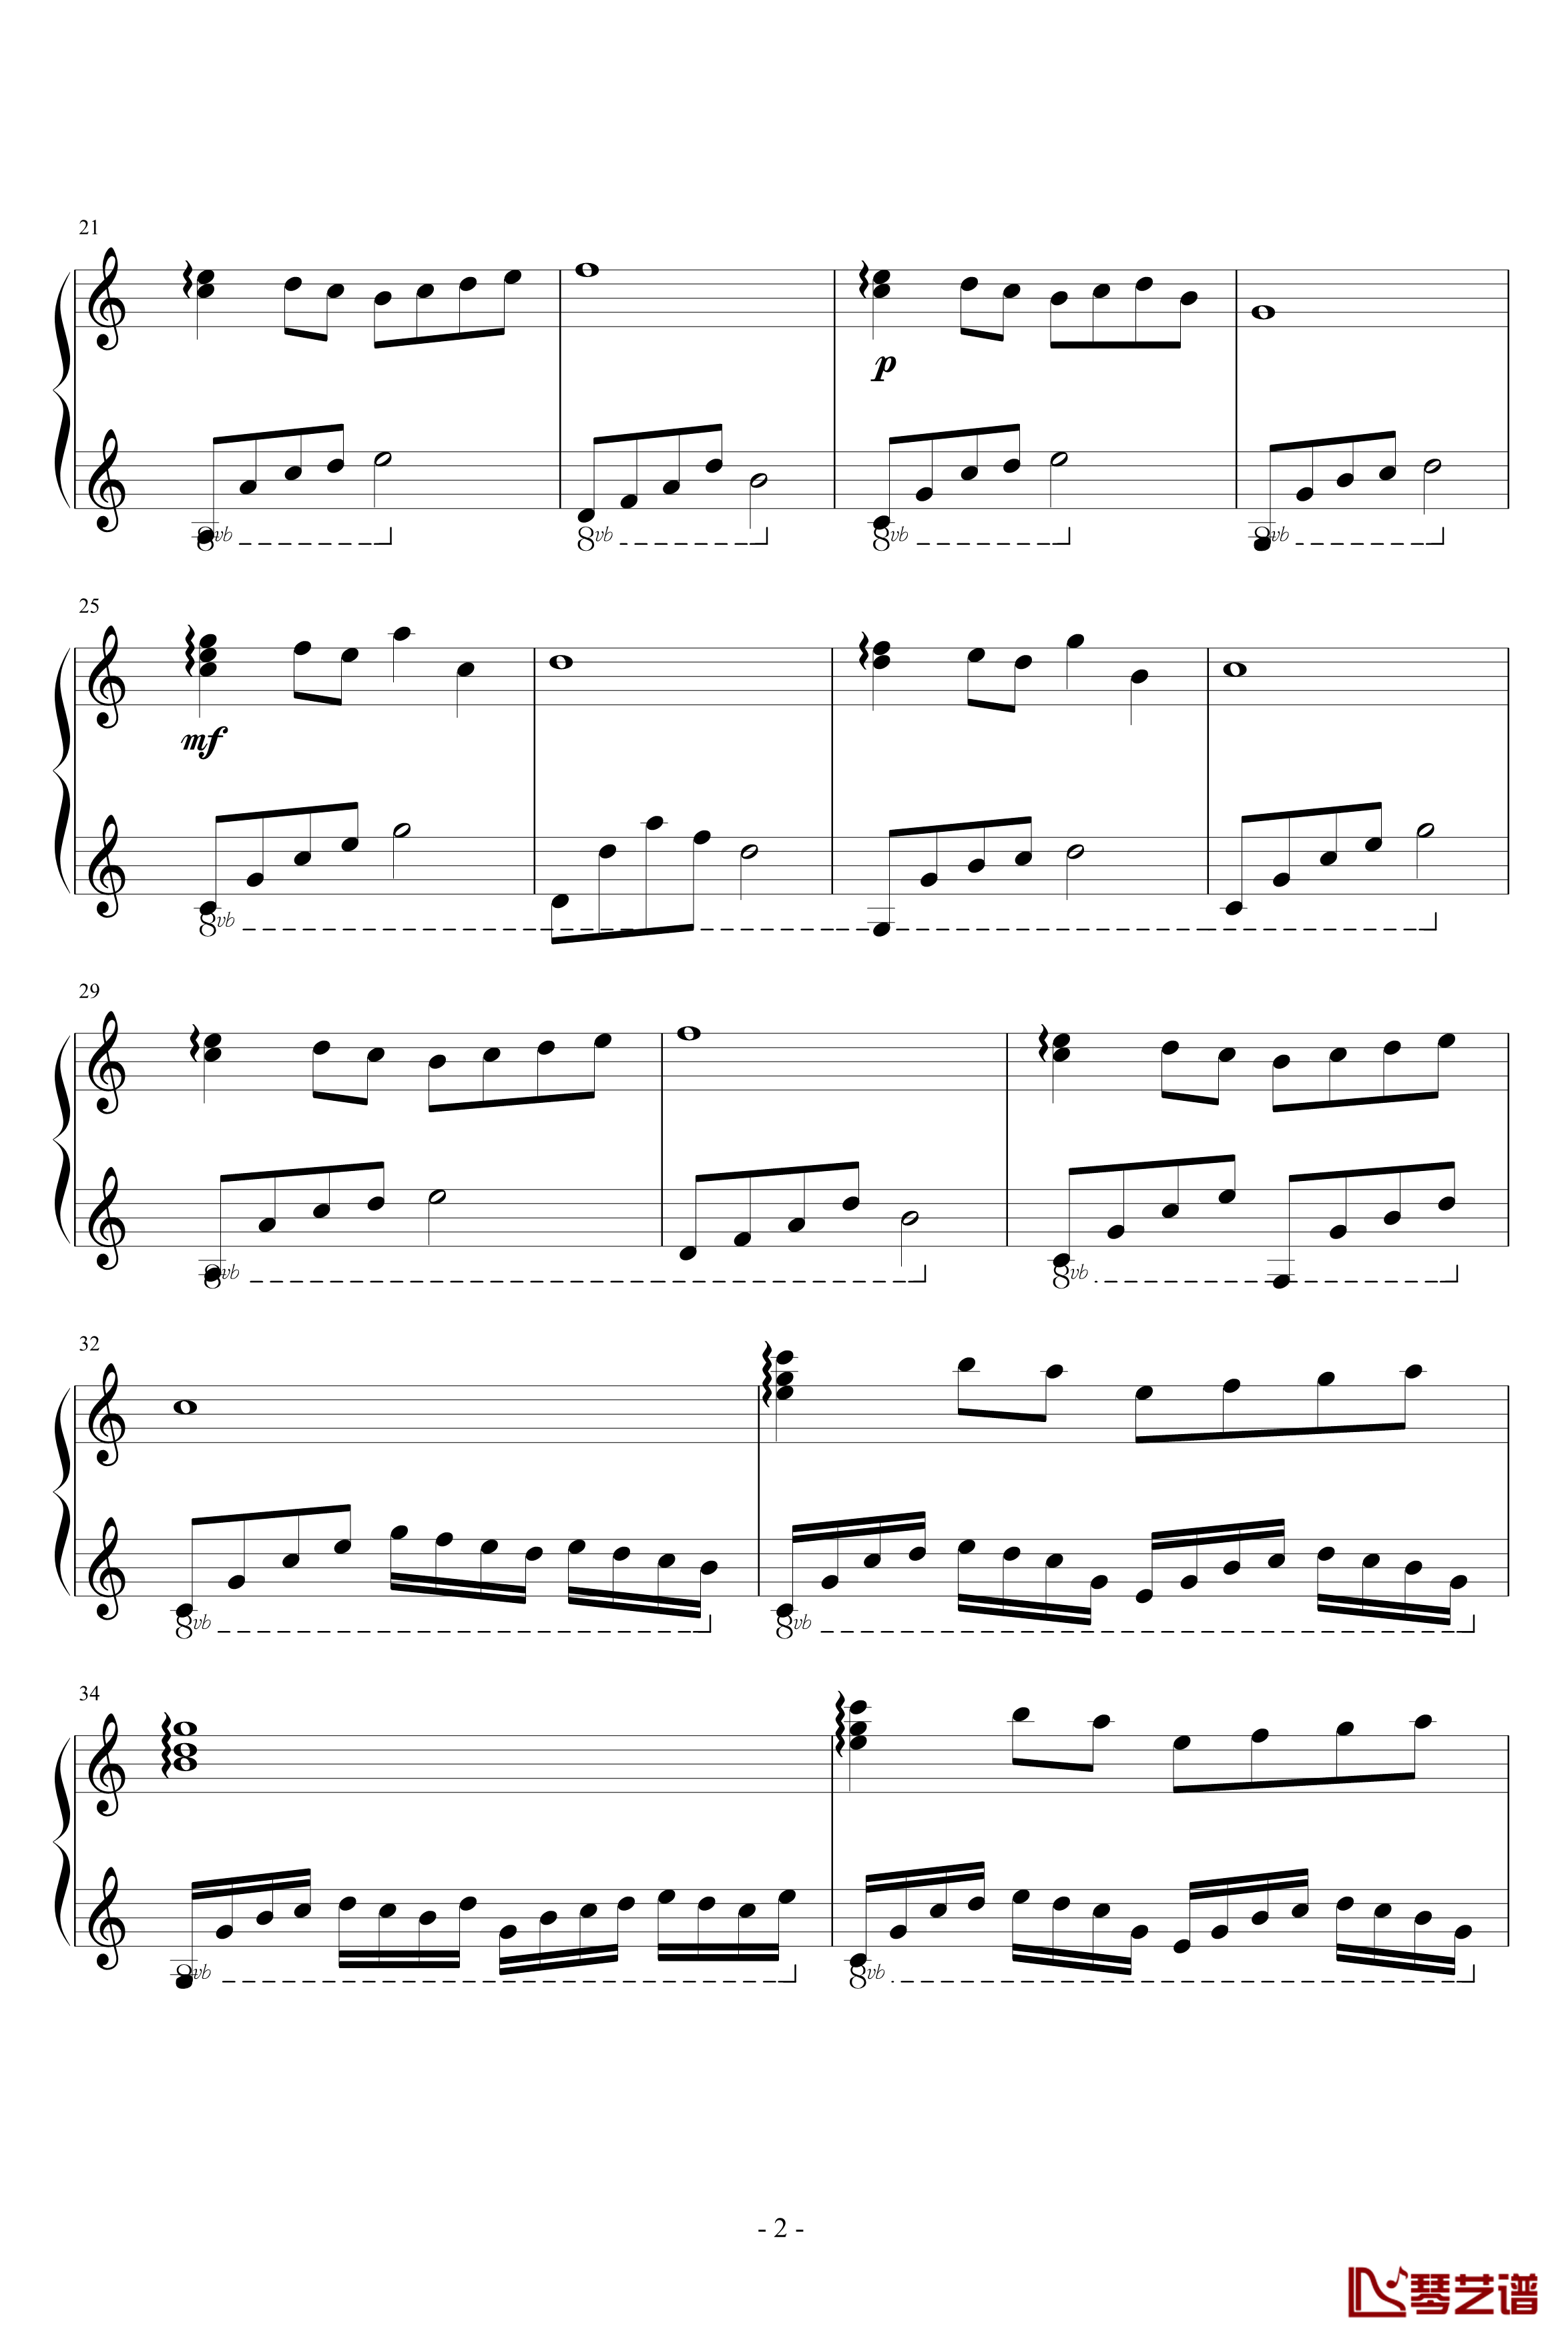 流星钢琴谱-zhouyun5252